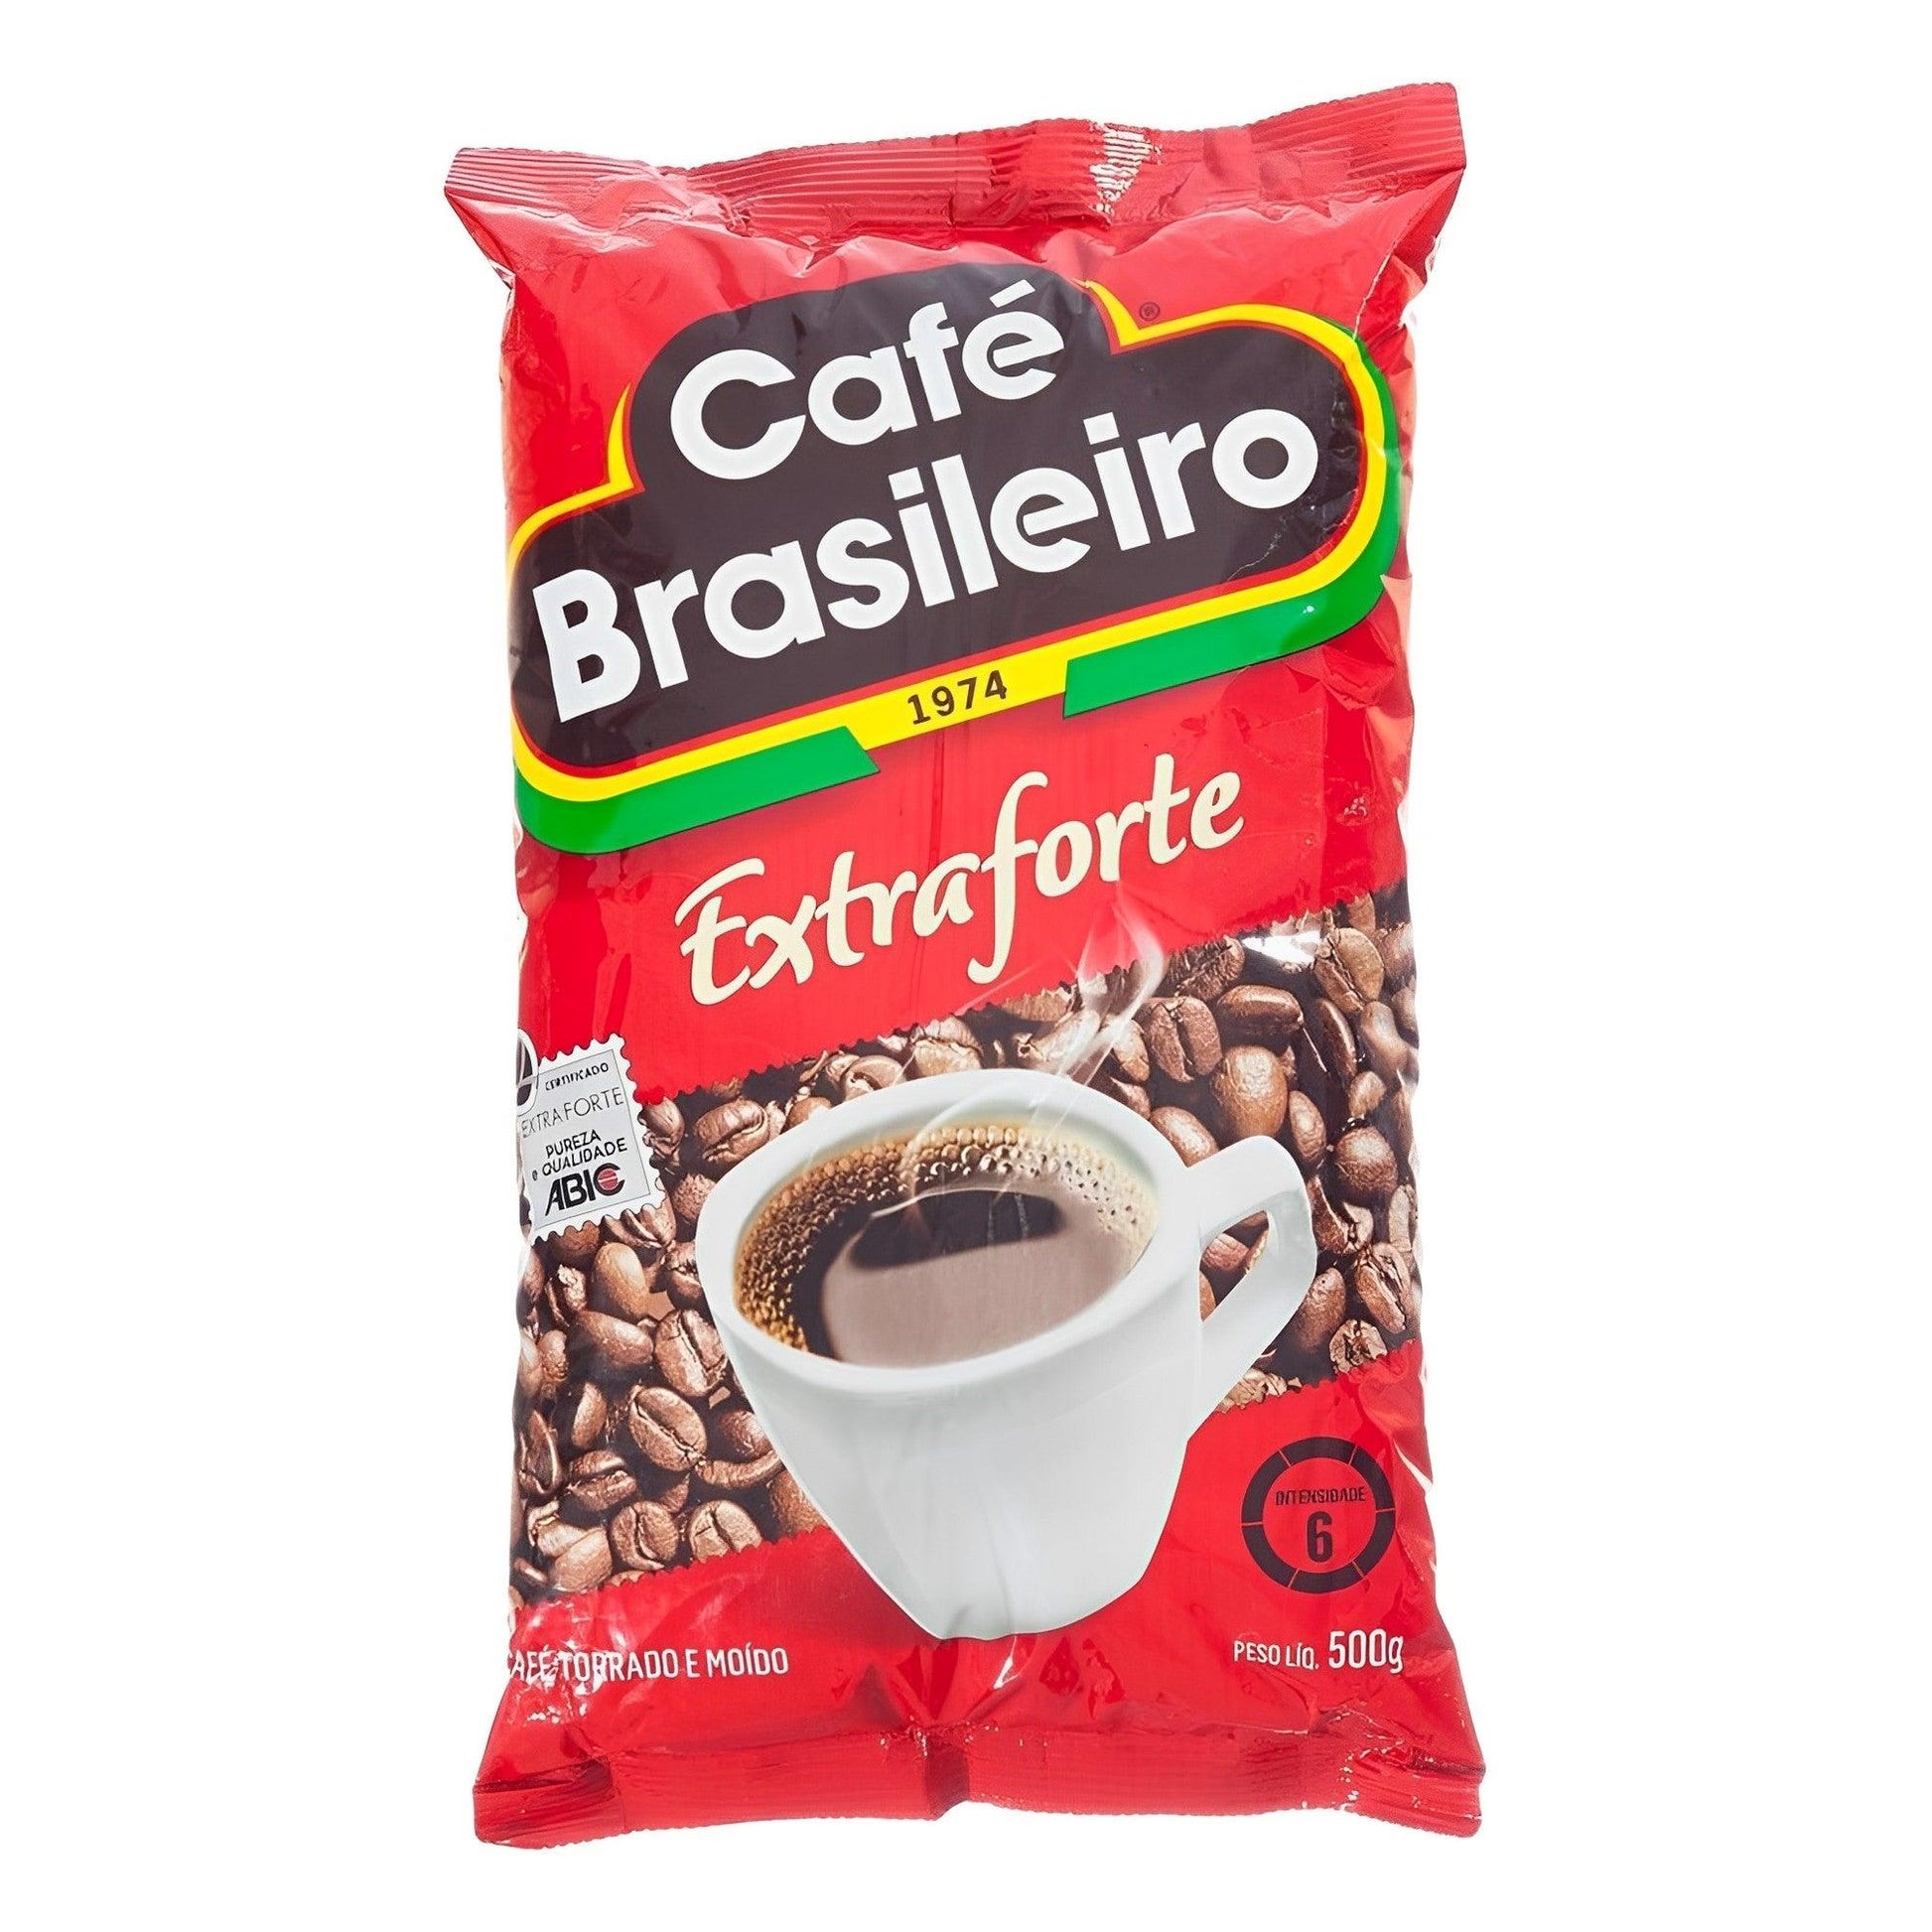 Café Brasileiro Extra Strong Coffee 17.64 oz. (Pack of 2) - Brazilian Shop